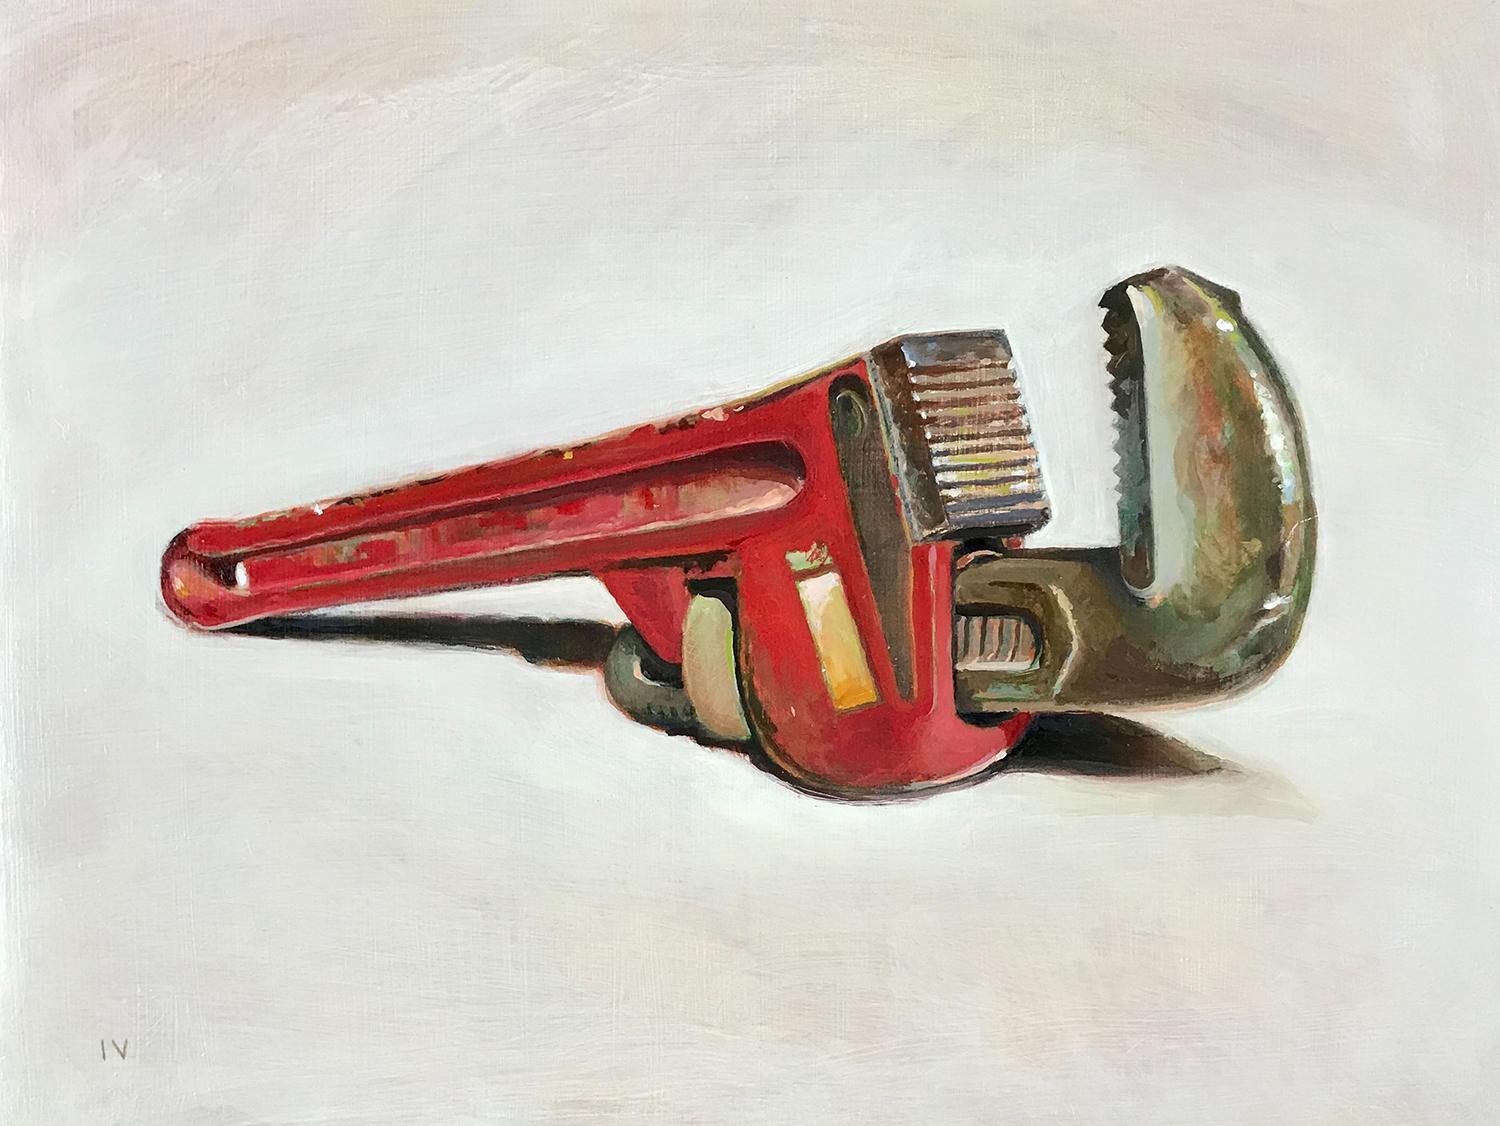 Wrench (Realistisches Stillleben, Ölgemälde eines roten Werkzeugs mit hellem Holzrahmen)